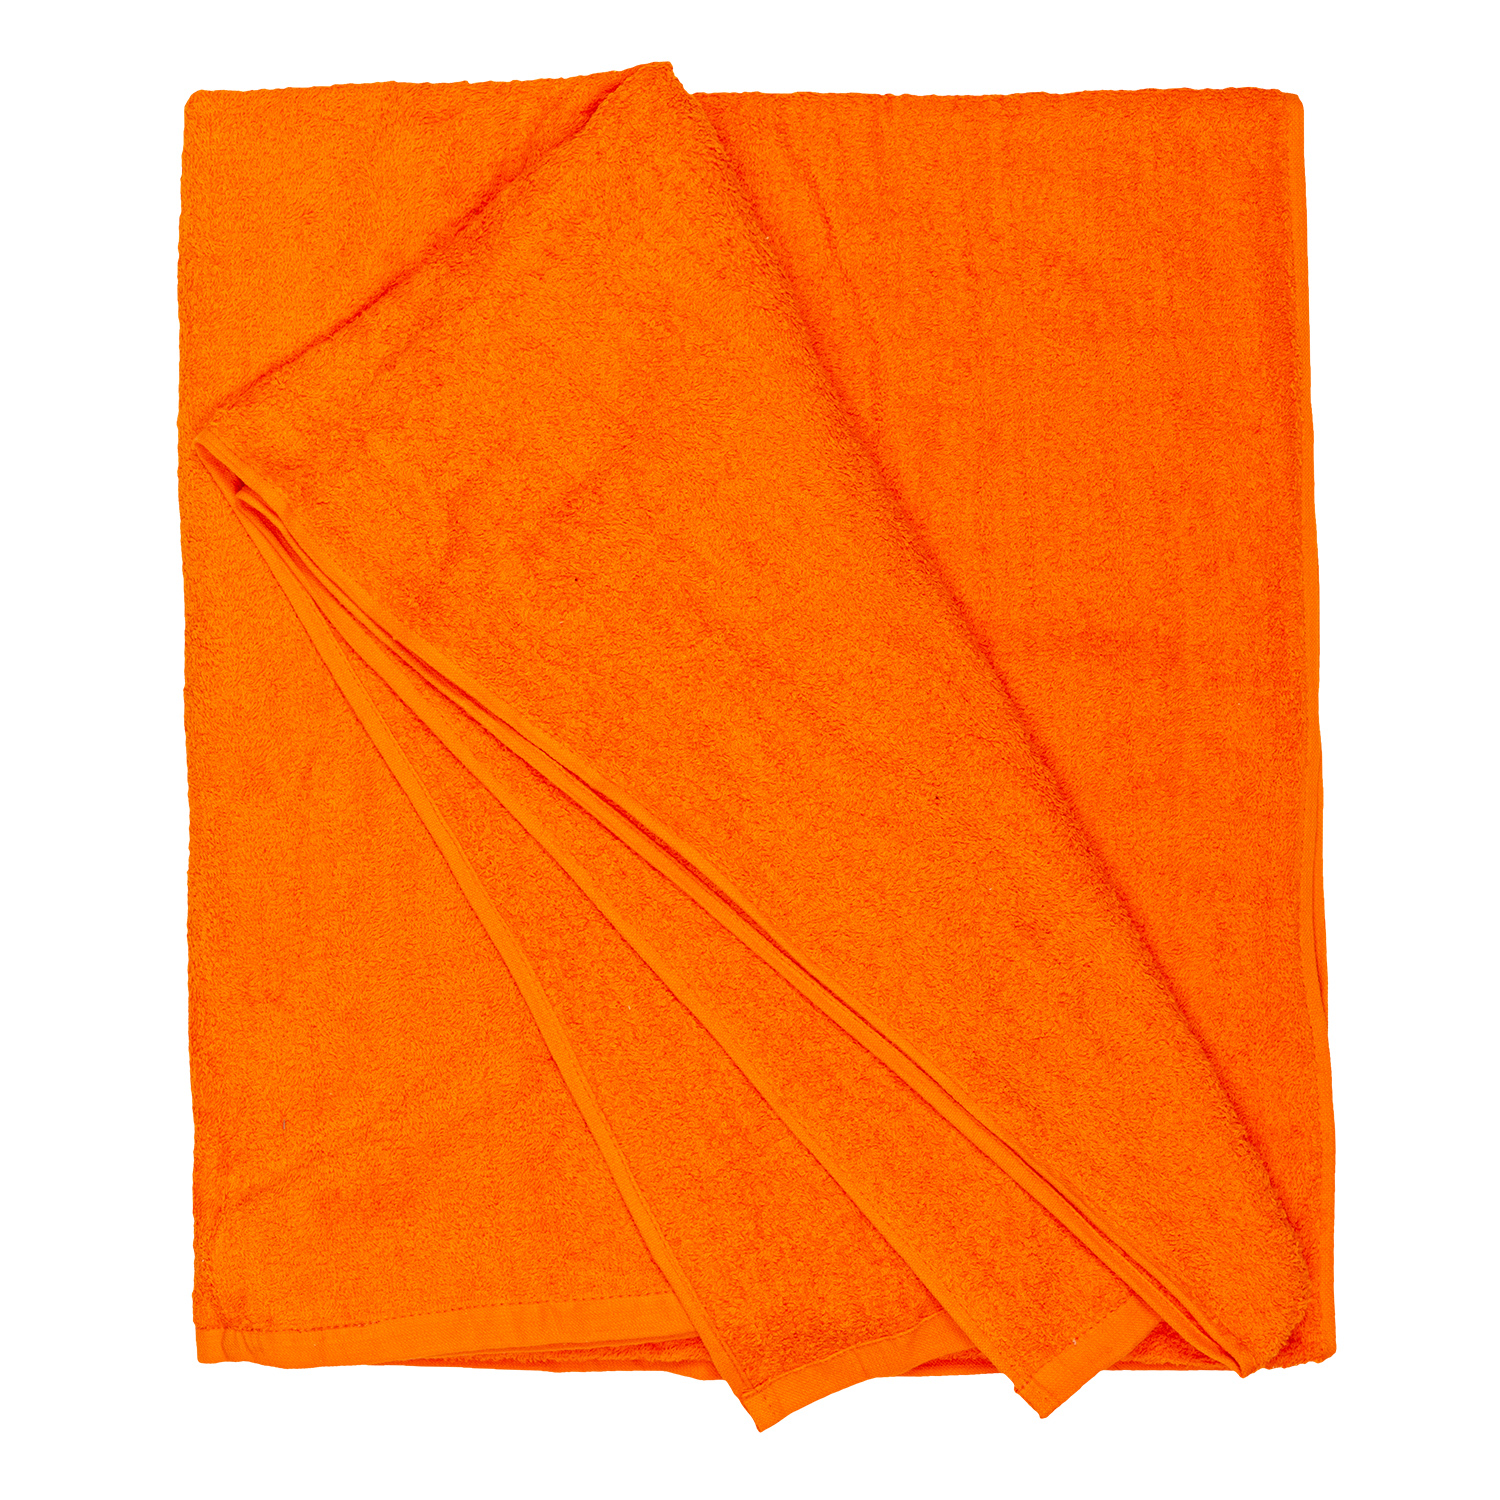 Bath towel series Helsinki in orange by Adamo in large sizes 100x220 cm or 155x220 cm